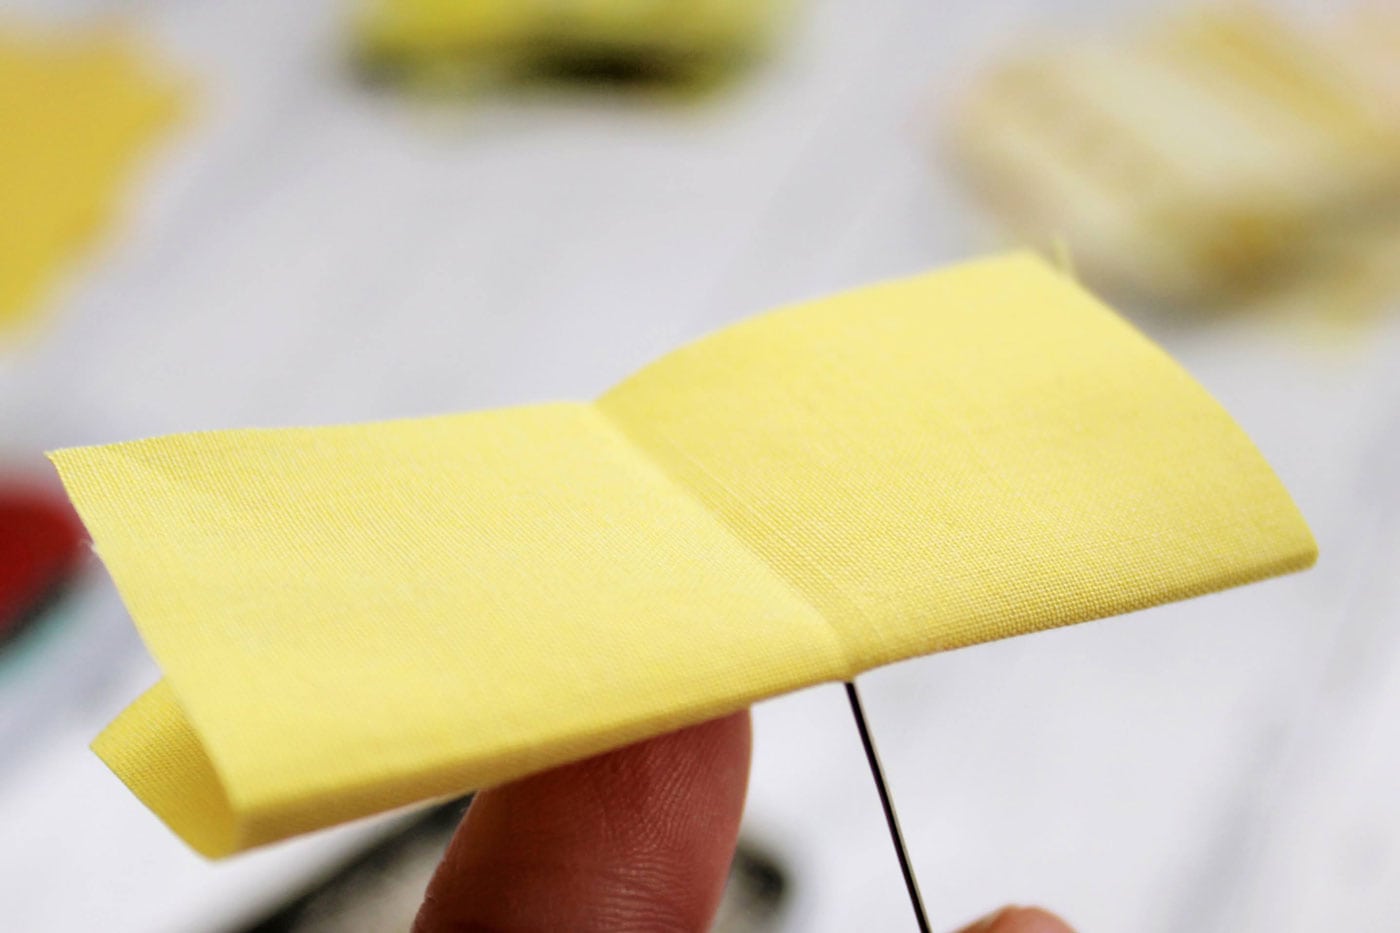 tissu jaune avec des plis, une épingle et une boule de polystyrène blanche